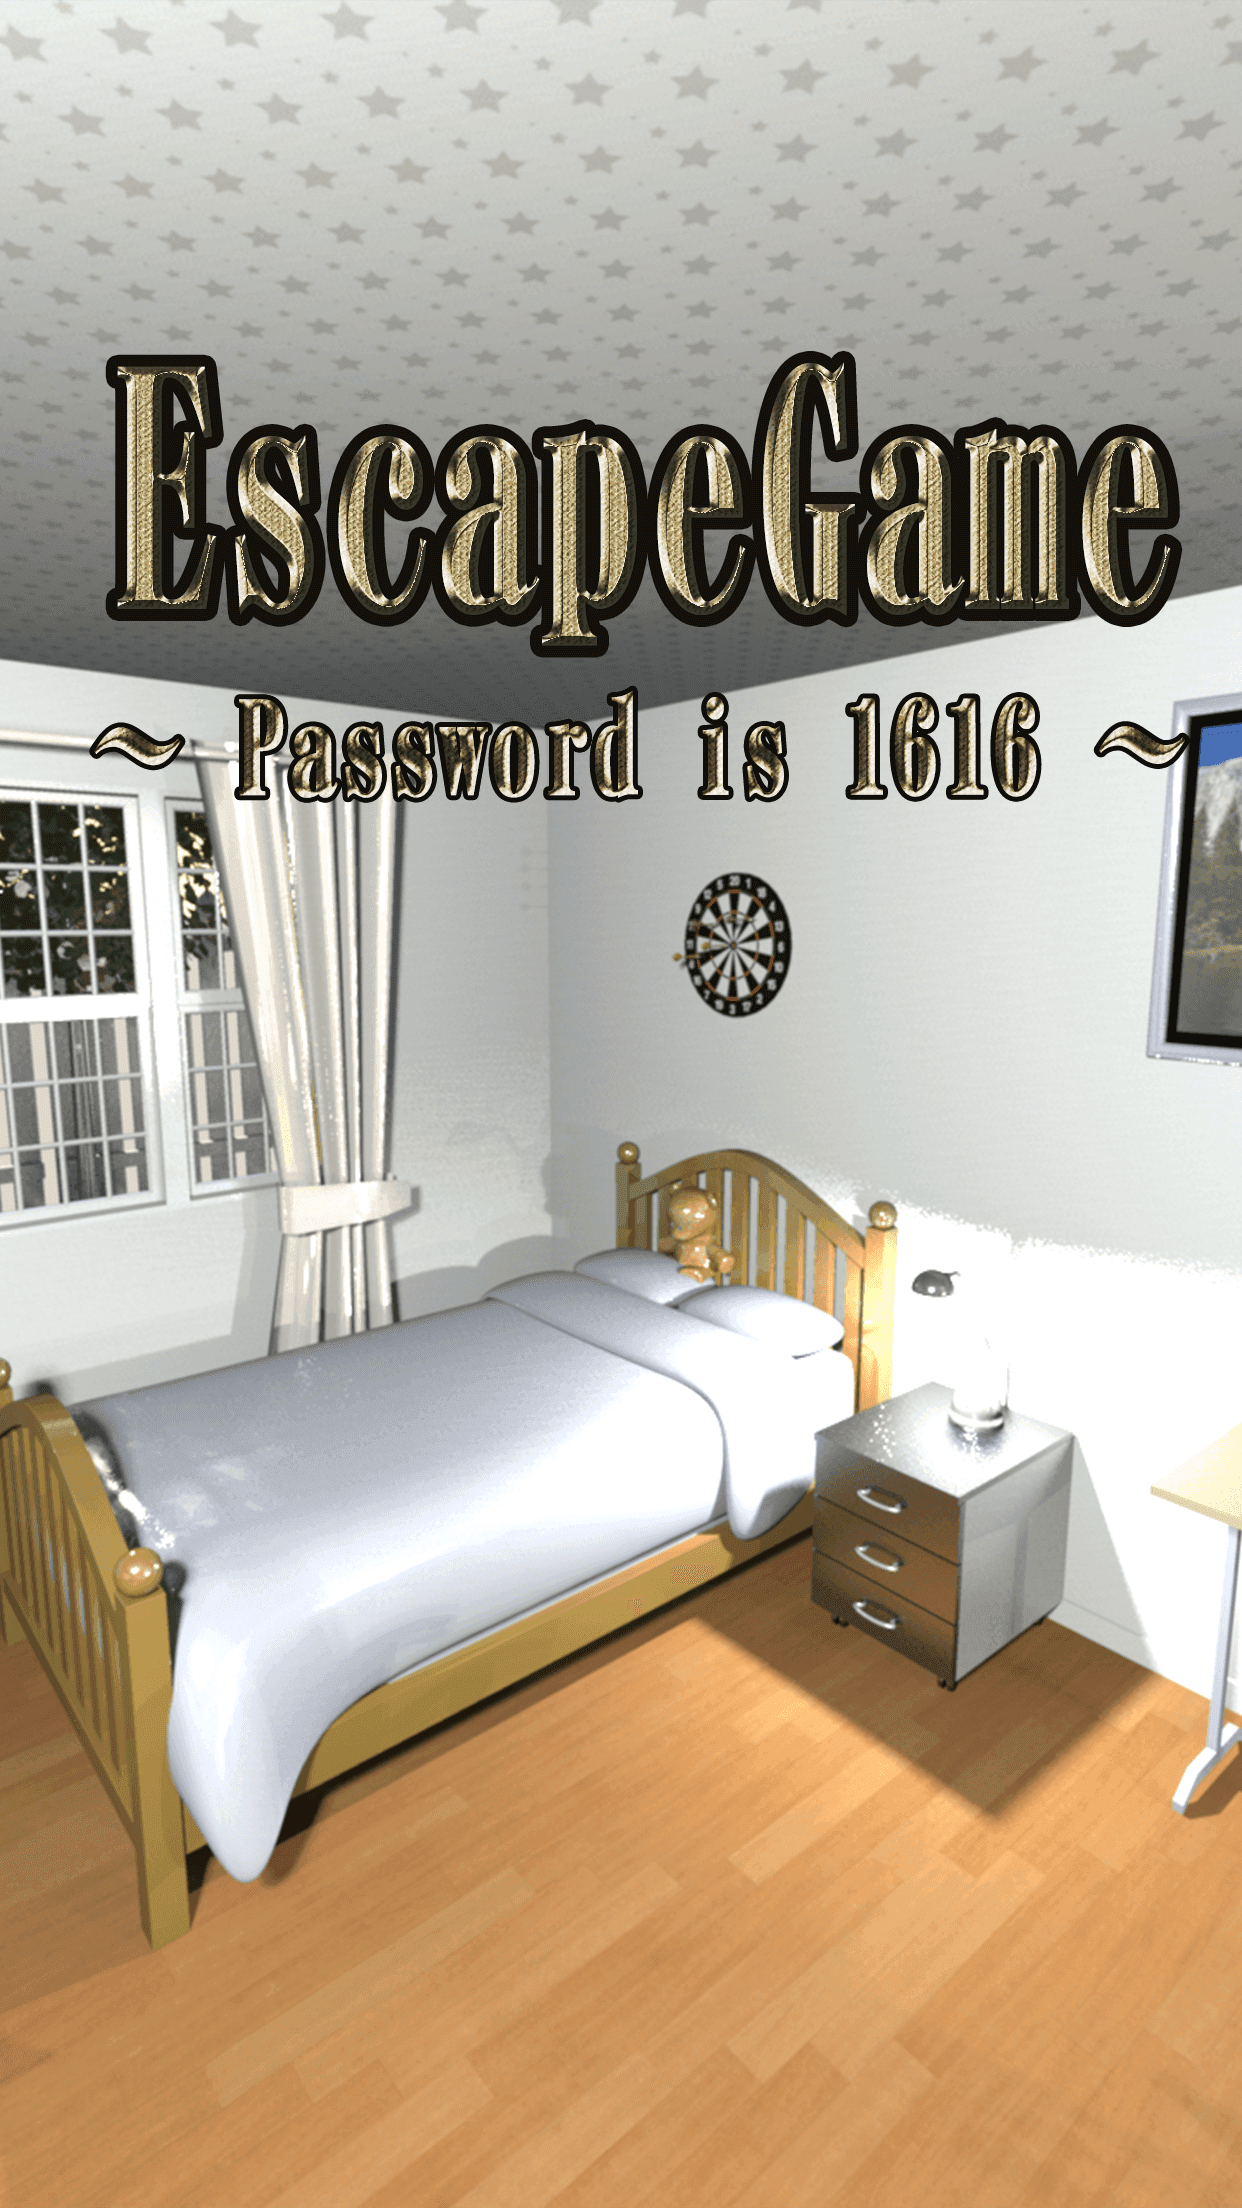 Screenshot 1 of Escape de la habitación: la contraseña es 1616 1.0.6